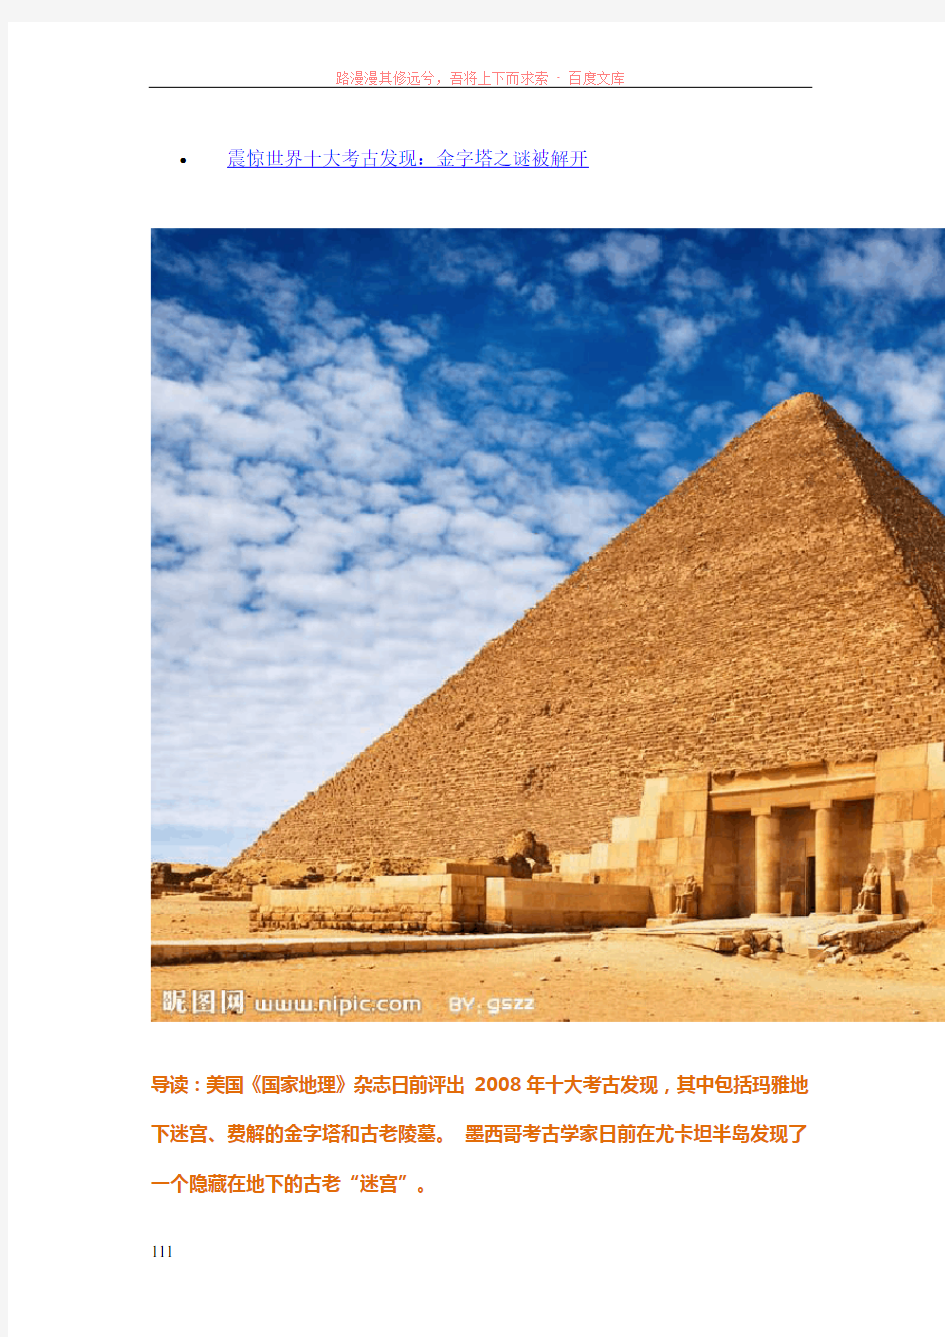 震惊世界十大考古发现金字塔之谜被解开